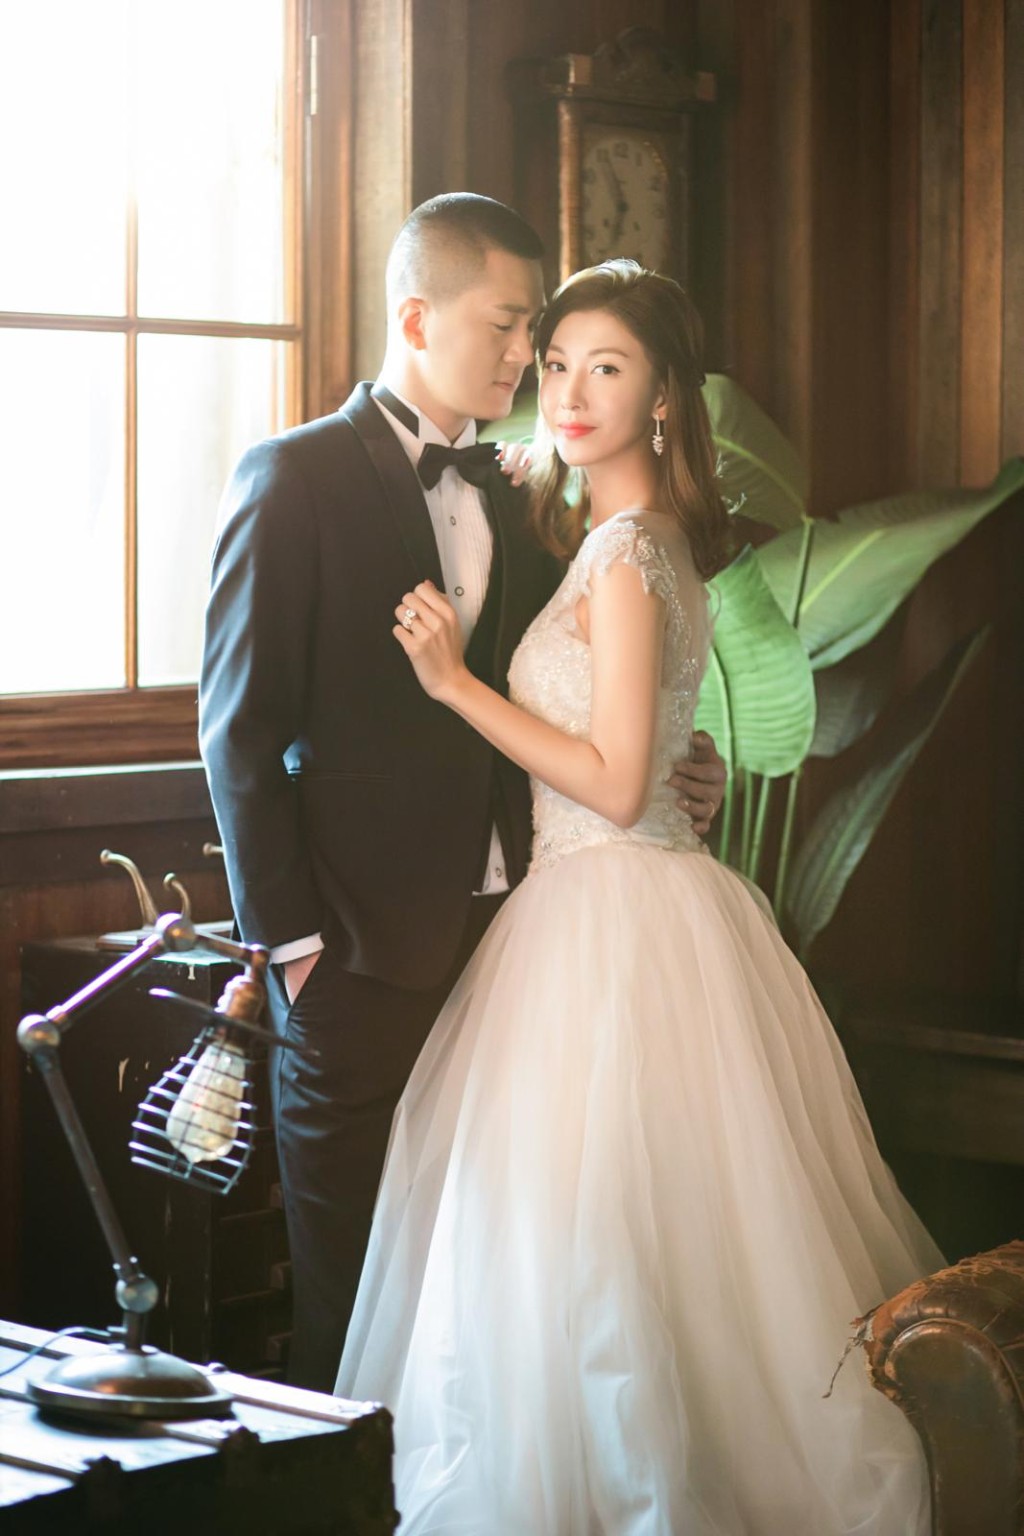 李彩华在2019年2月宣布与从事钢铁生意的内地商人黄彦书（Eric）结婚。